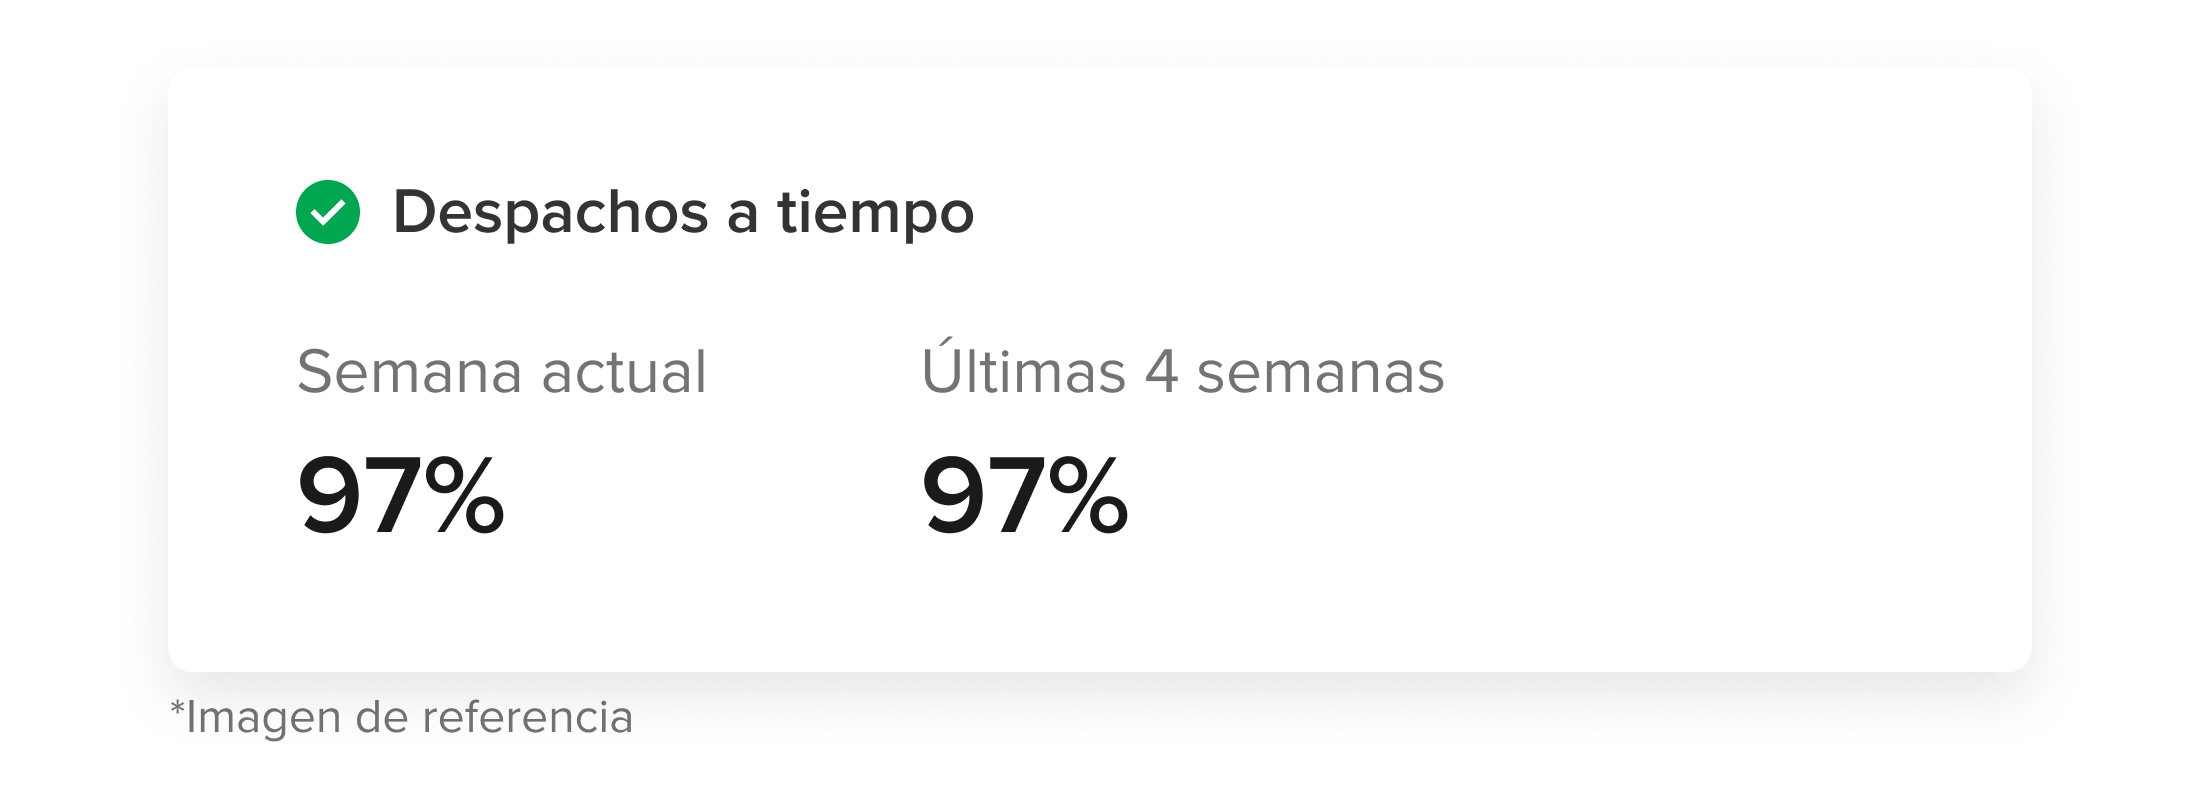 Ejemplo de la sección Despachos a tiempo que muestra los porcentajes de 97% en la semana actual y en las últimas 4 semanas